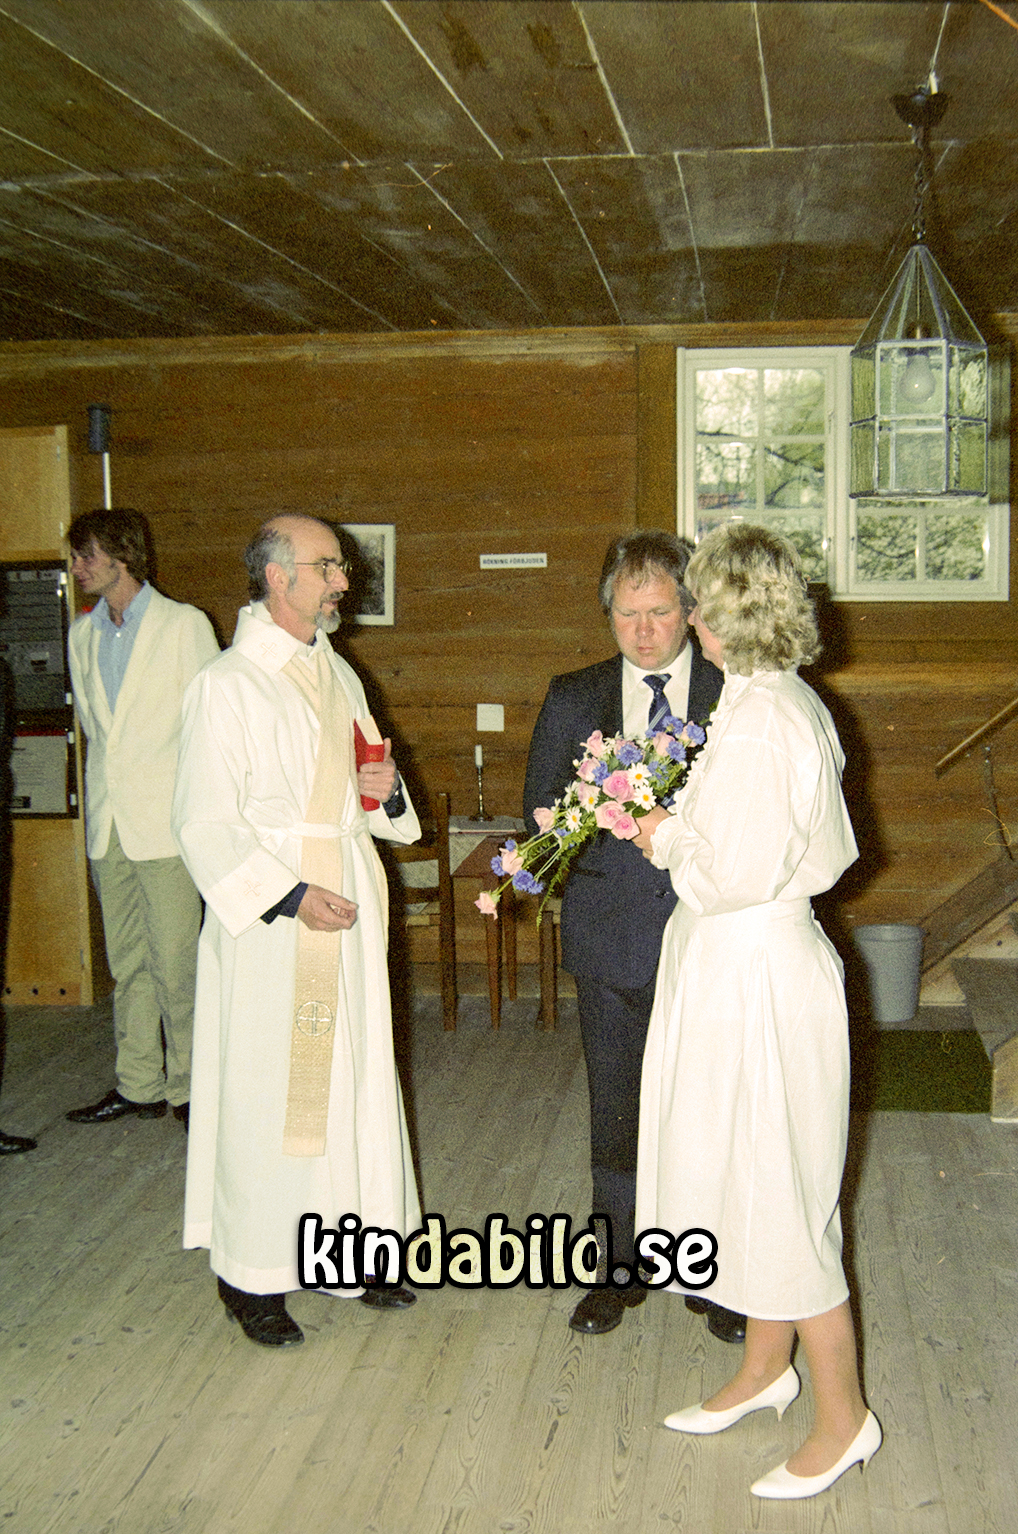 Bengt Pettersson
raja
Brudpar

